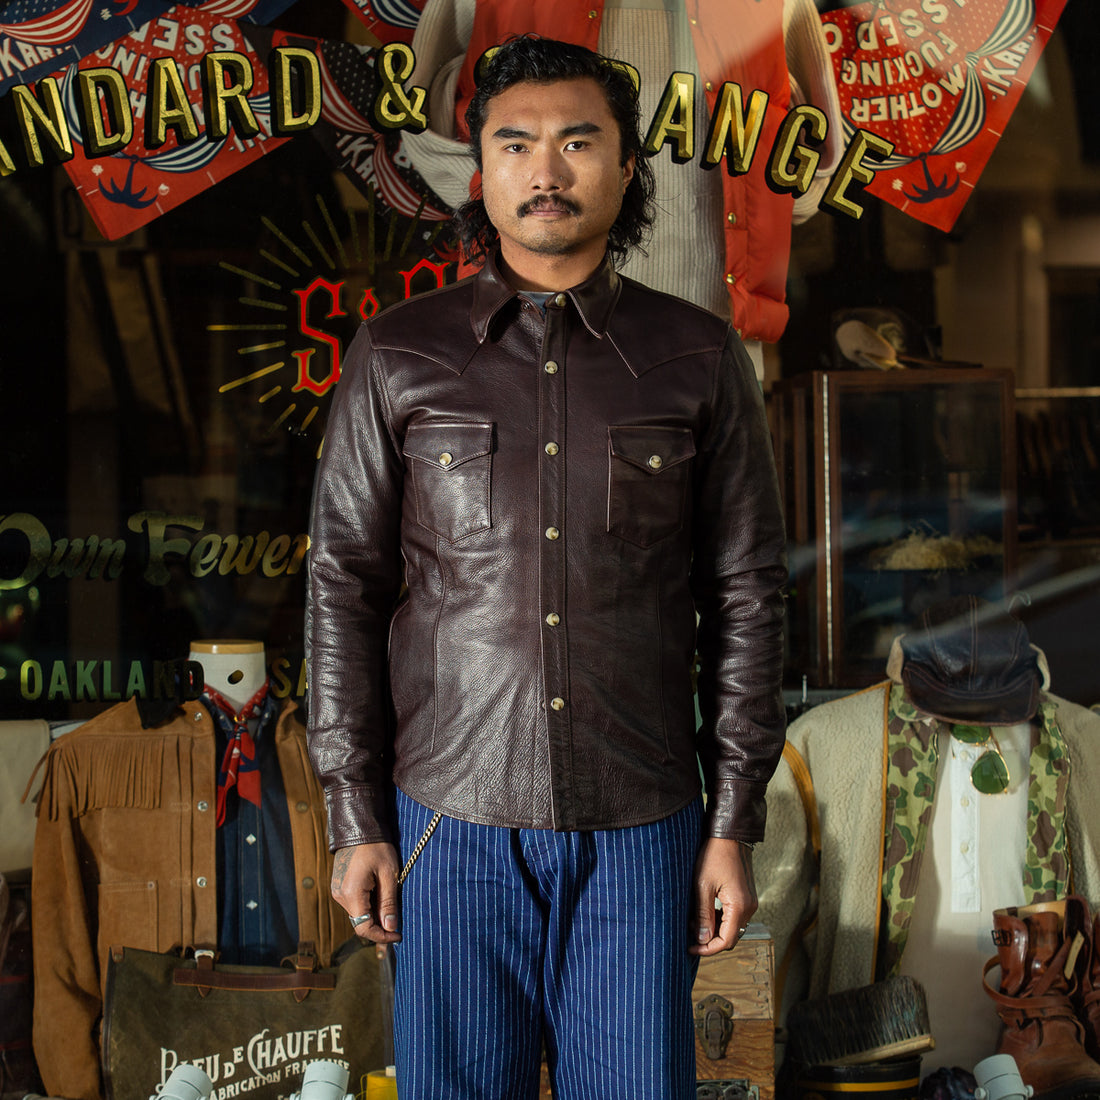 Y'2 Leather Steer Oil Western Shirt - Brown (SS-13) - Standard & Strange